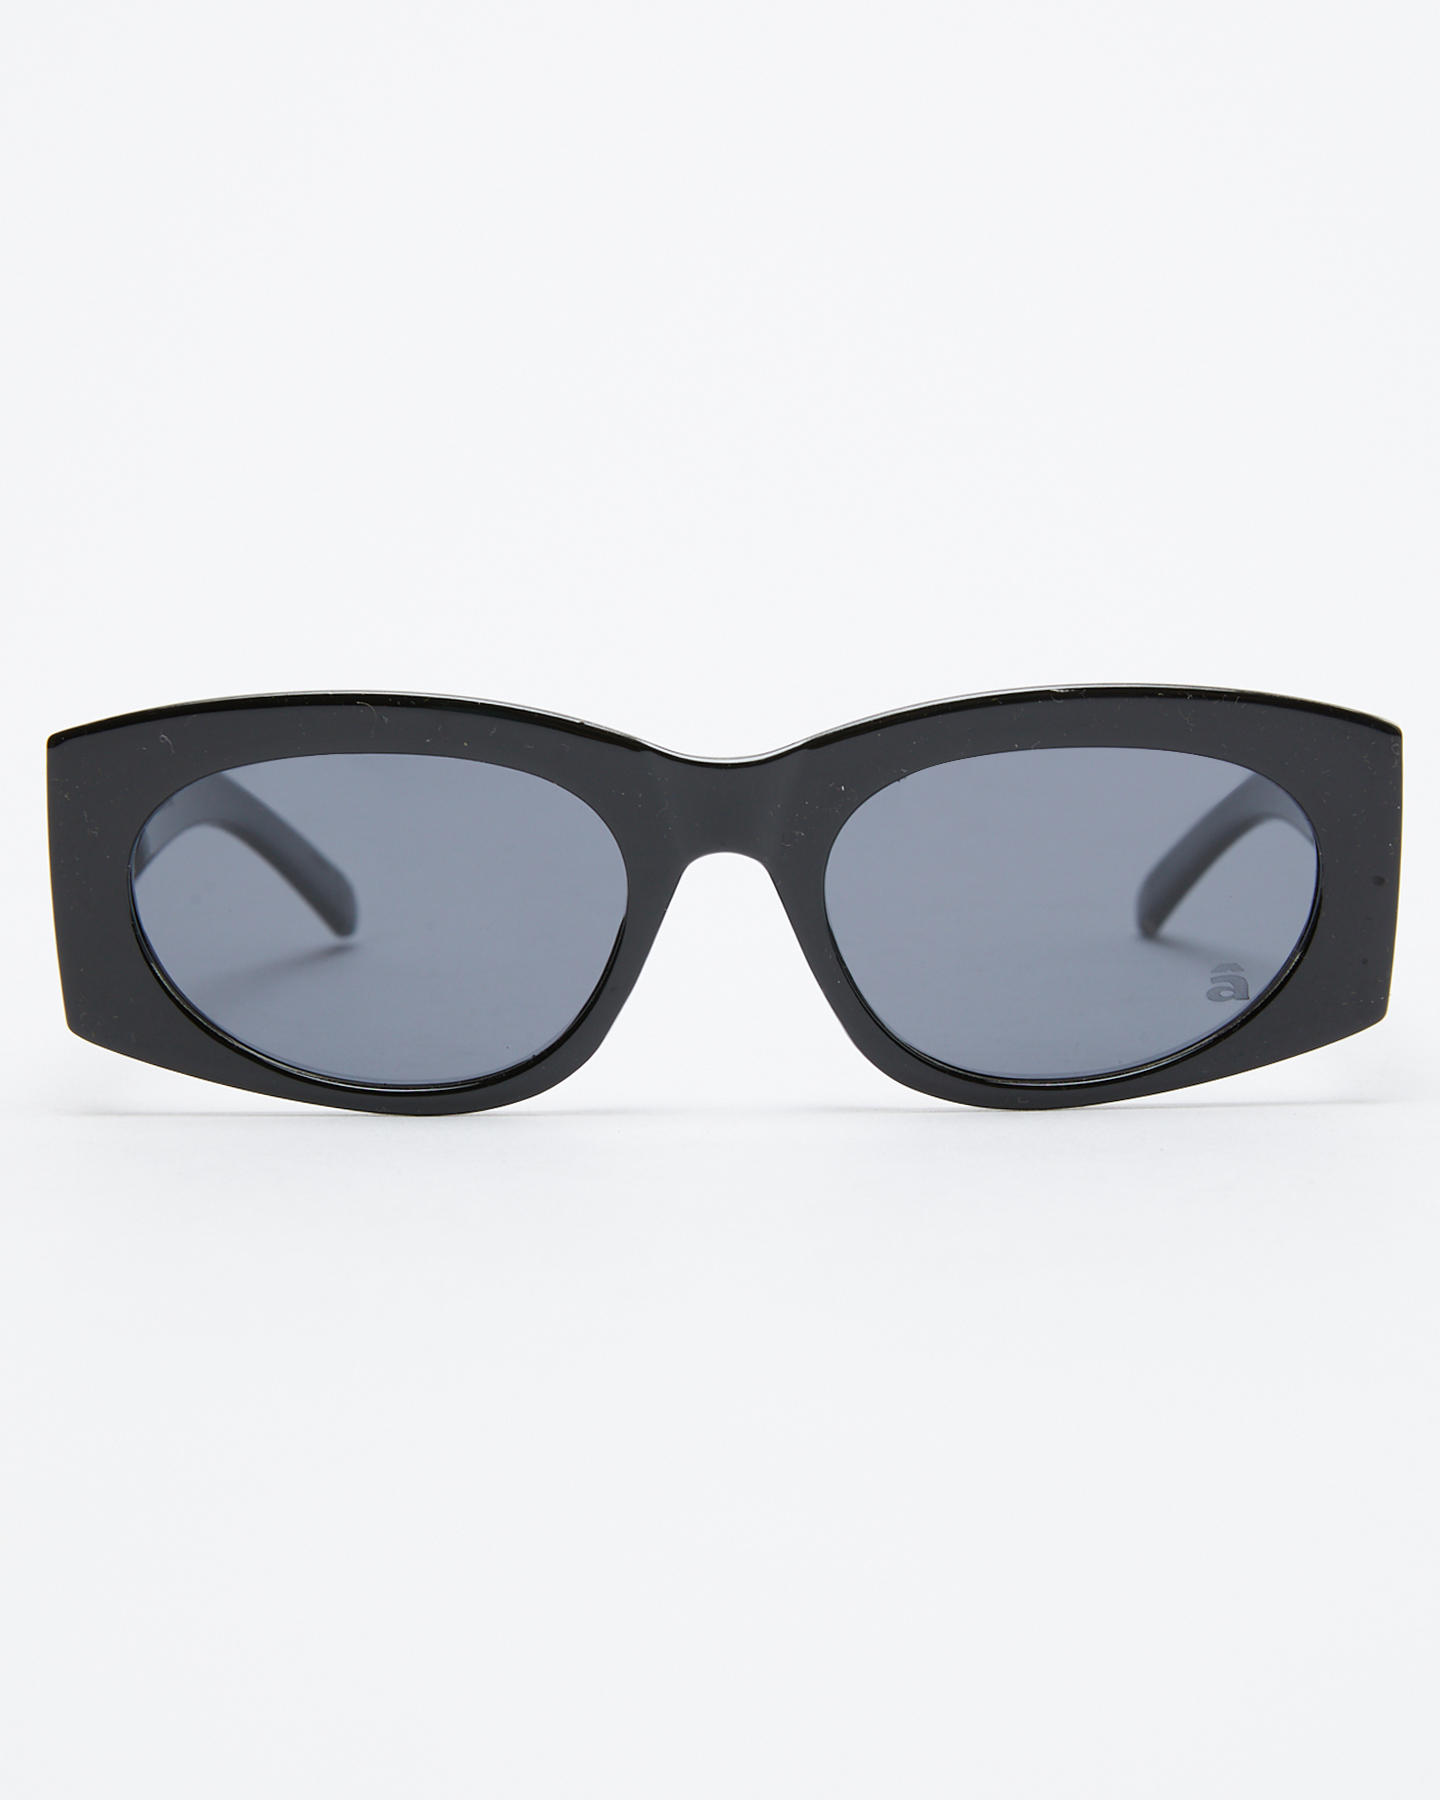 Szade Eyewear Cave Polarized Sunglasses - Elysium Black Ink | SurfStitch